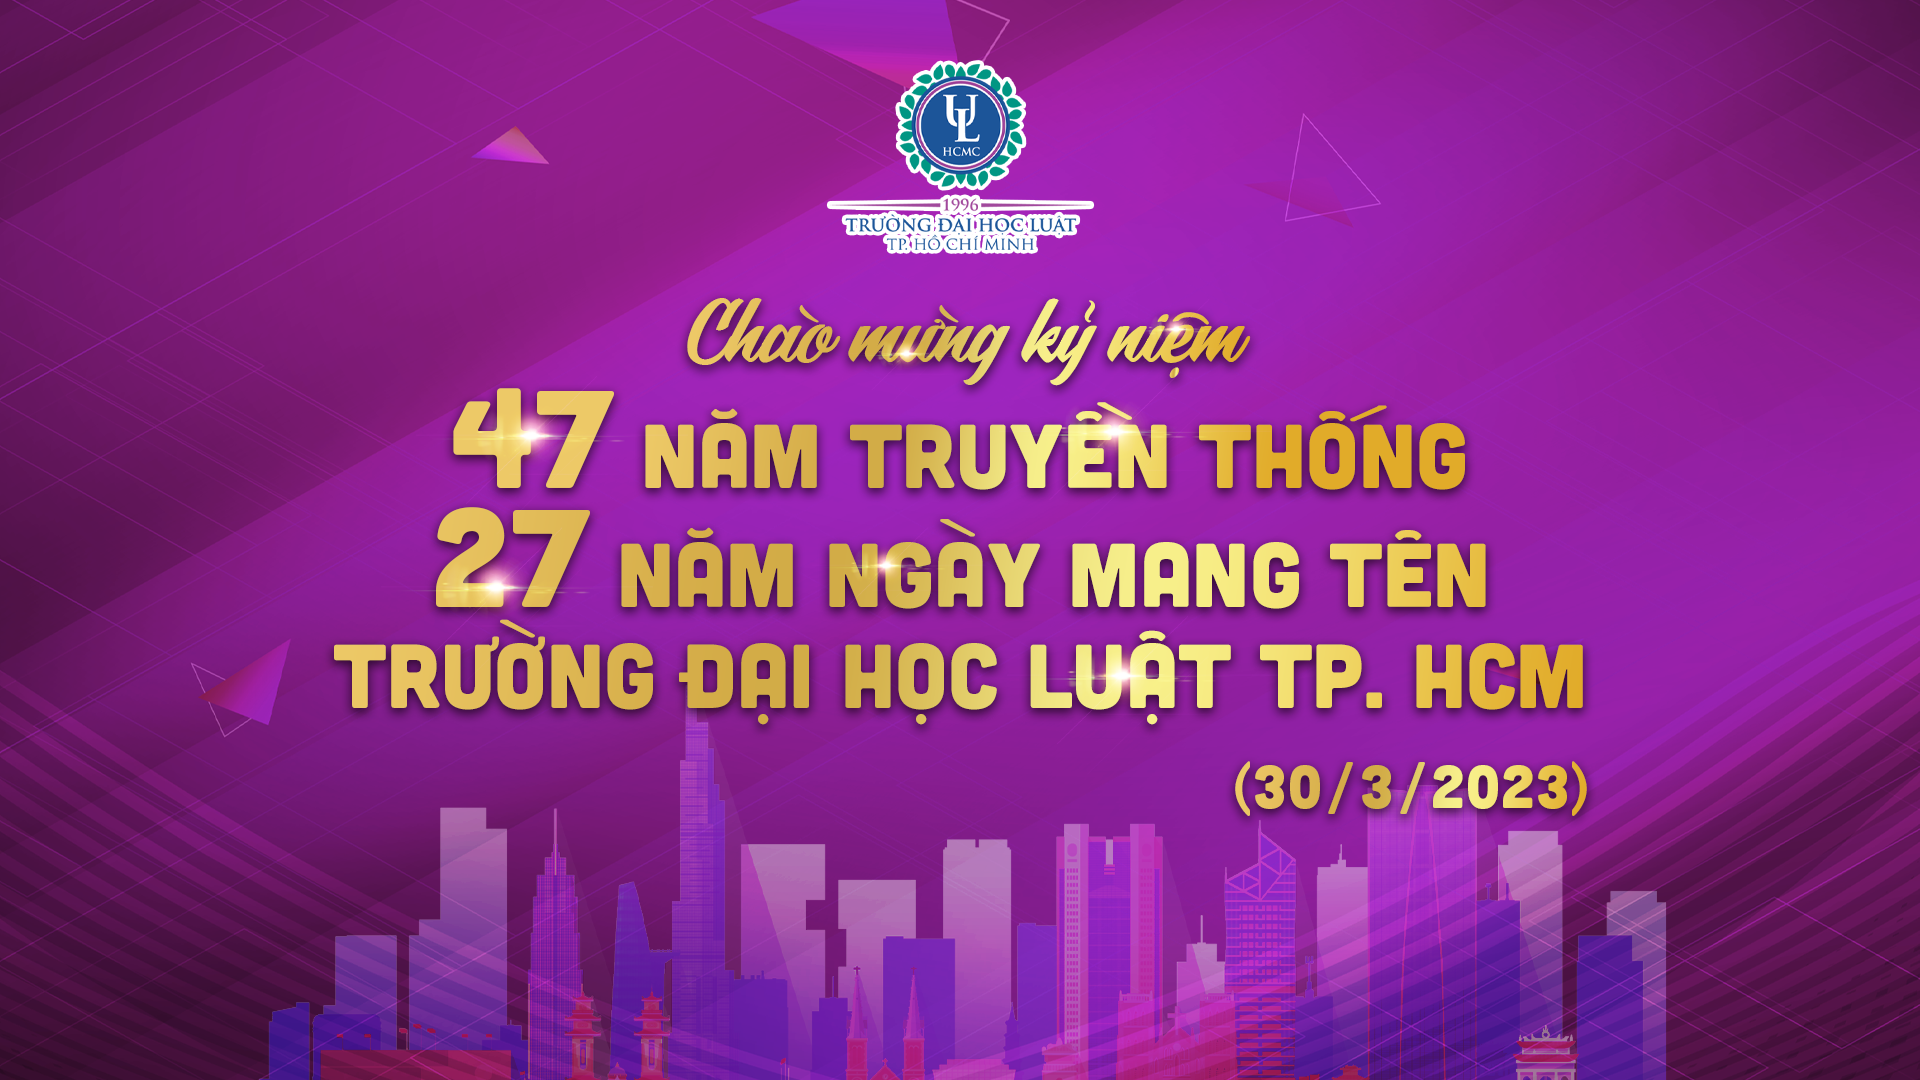 Luật TP.HCM đóng vai trò rất quan trọng trong việc quản lý và phát triển thành phố lớn nhất Việt Nam. Nếu bạn muốn biết thêm về các quy định mới nhất của thành phố, hãy xem hình ảnh liên quan để cập nhật thông tin.